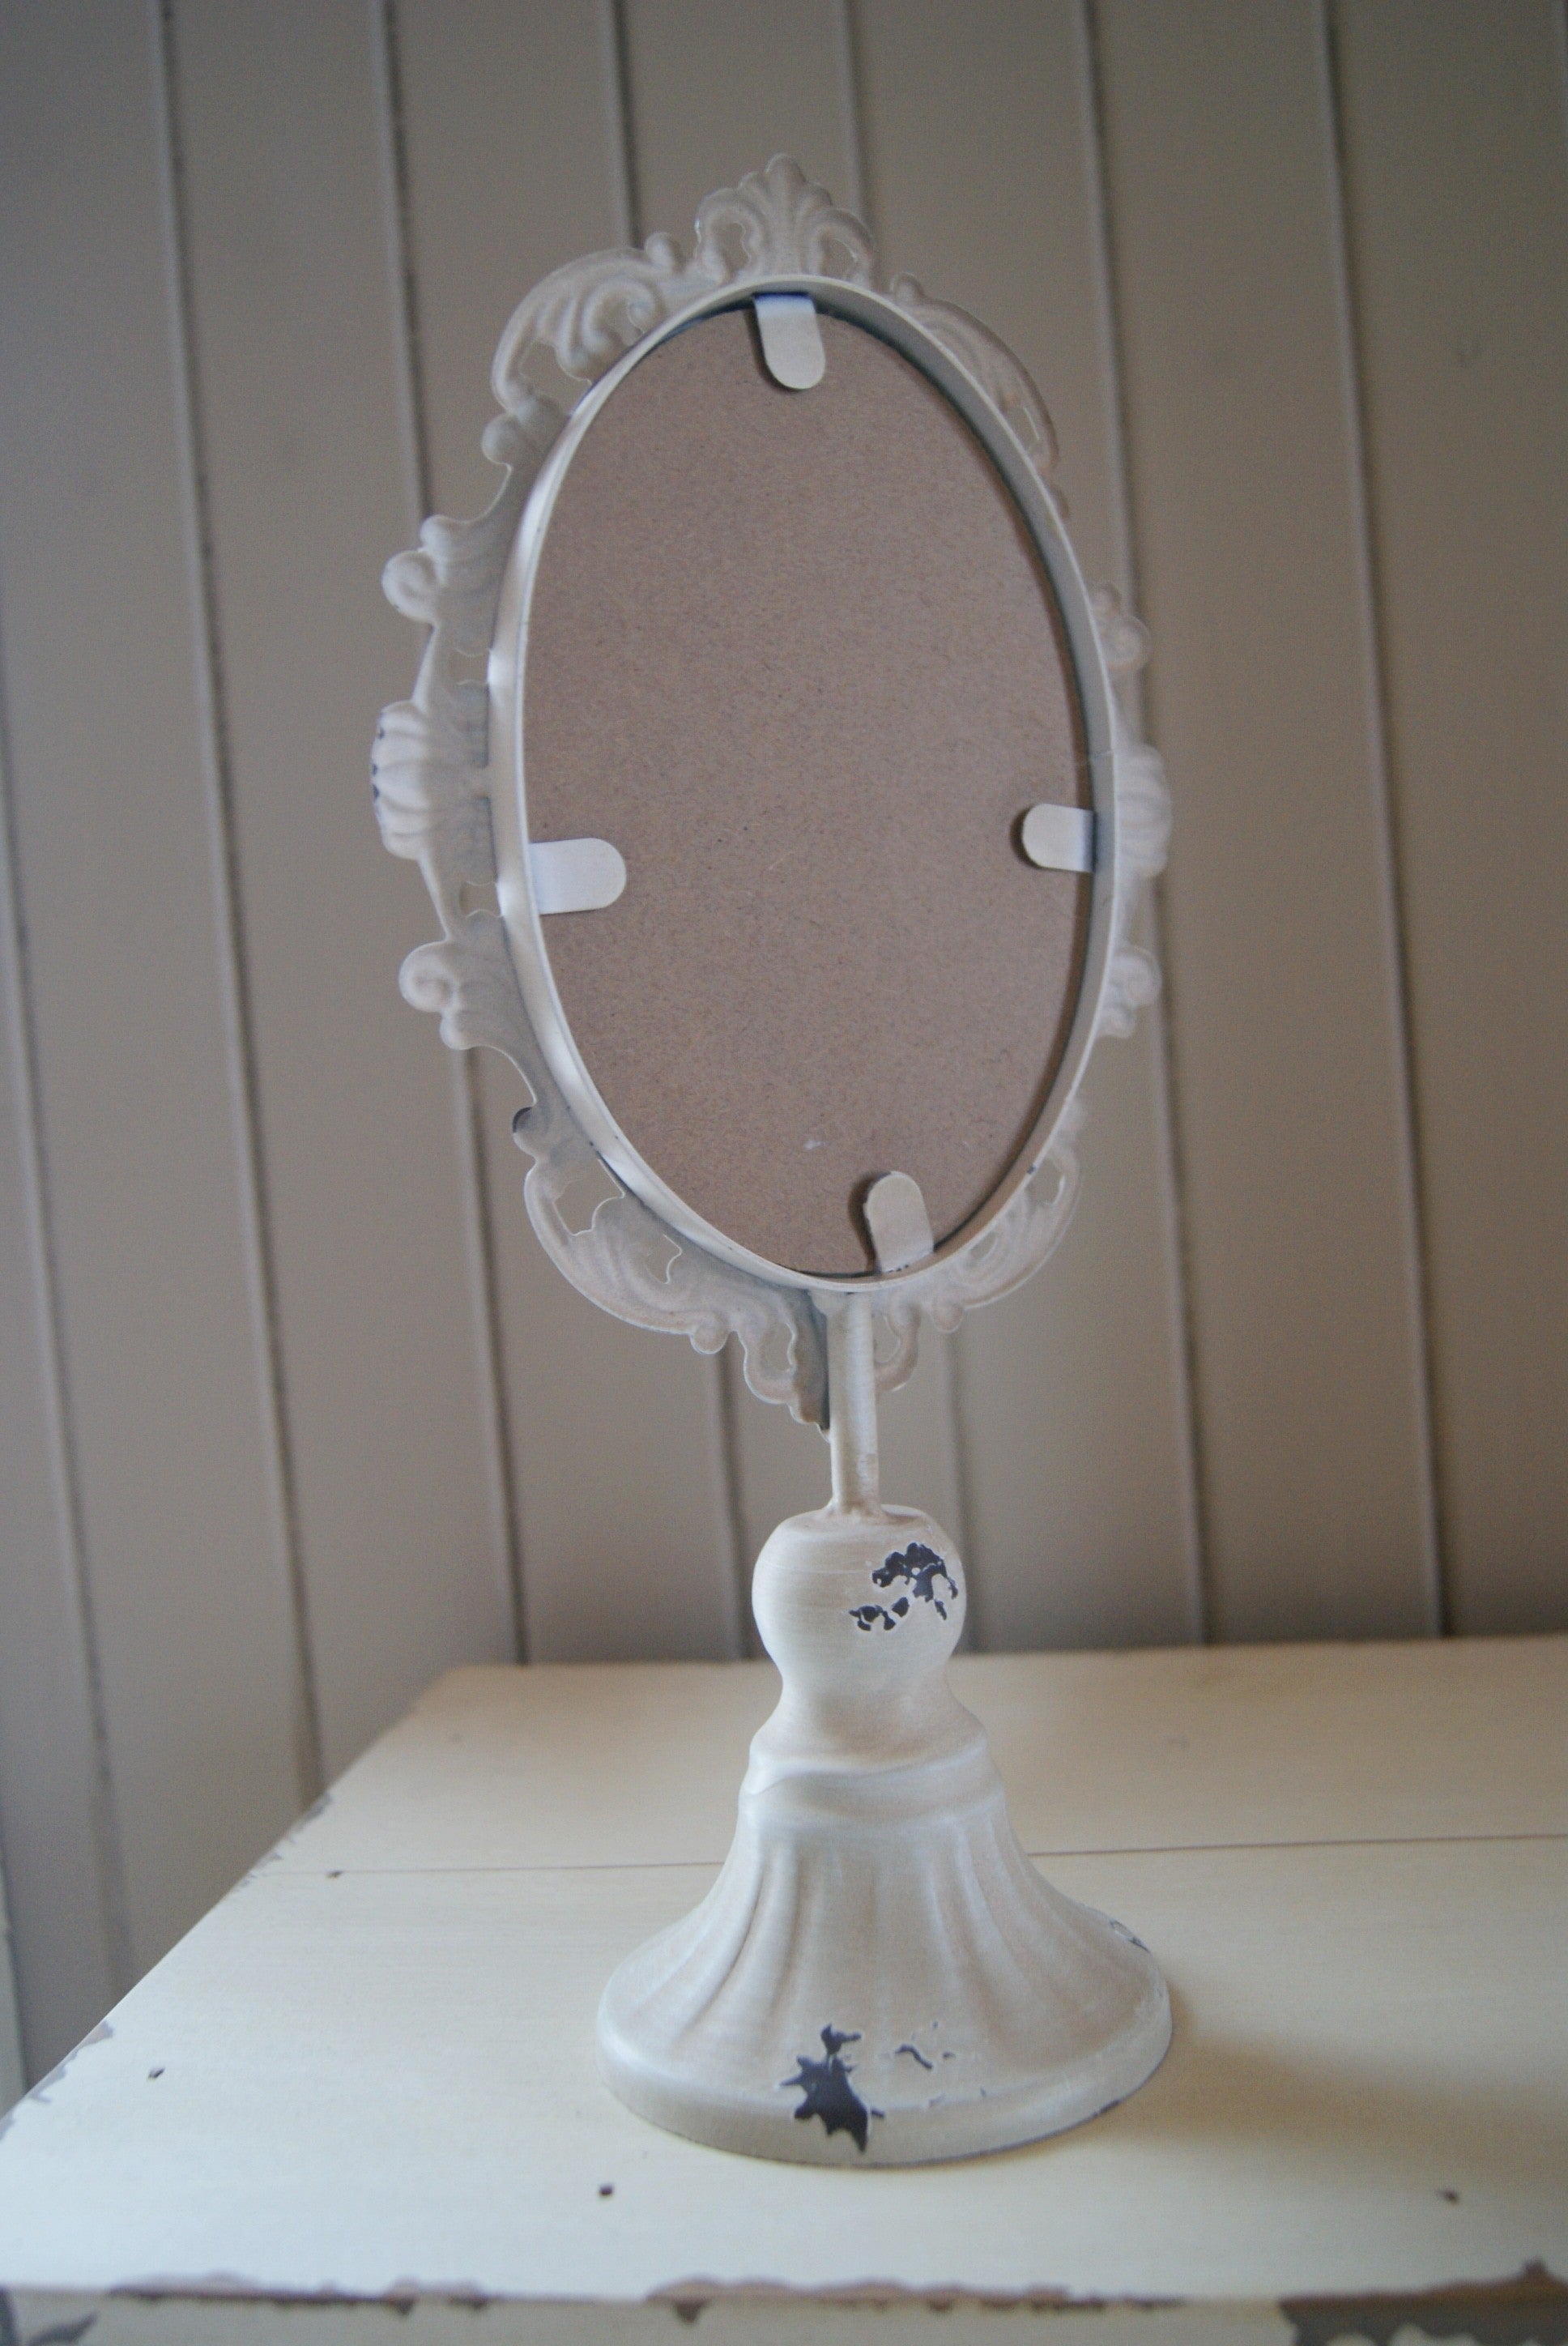 Den här vackra lilla spegeln är inte bara dekorativ utan också perfekt för smink. Spegeln utstrålar en antik charm på grund av dess åldrande utseende. Storlek: 30 x 14 x 9 cm  Material: Metall  Färg: Vit  Ytbehandling: Antikbehandling